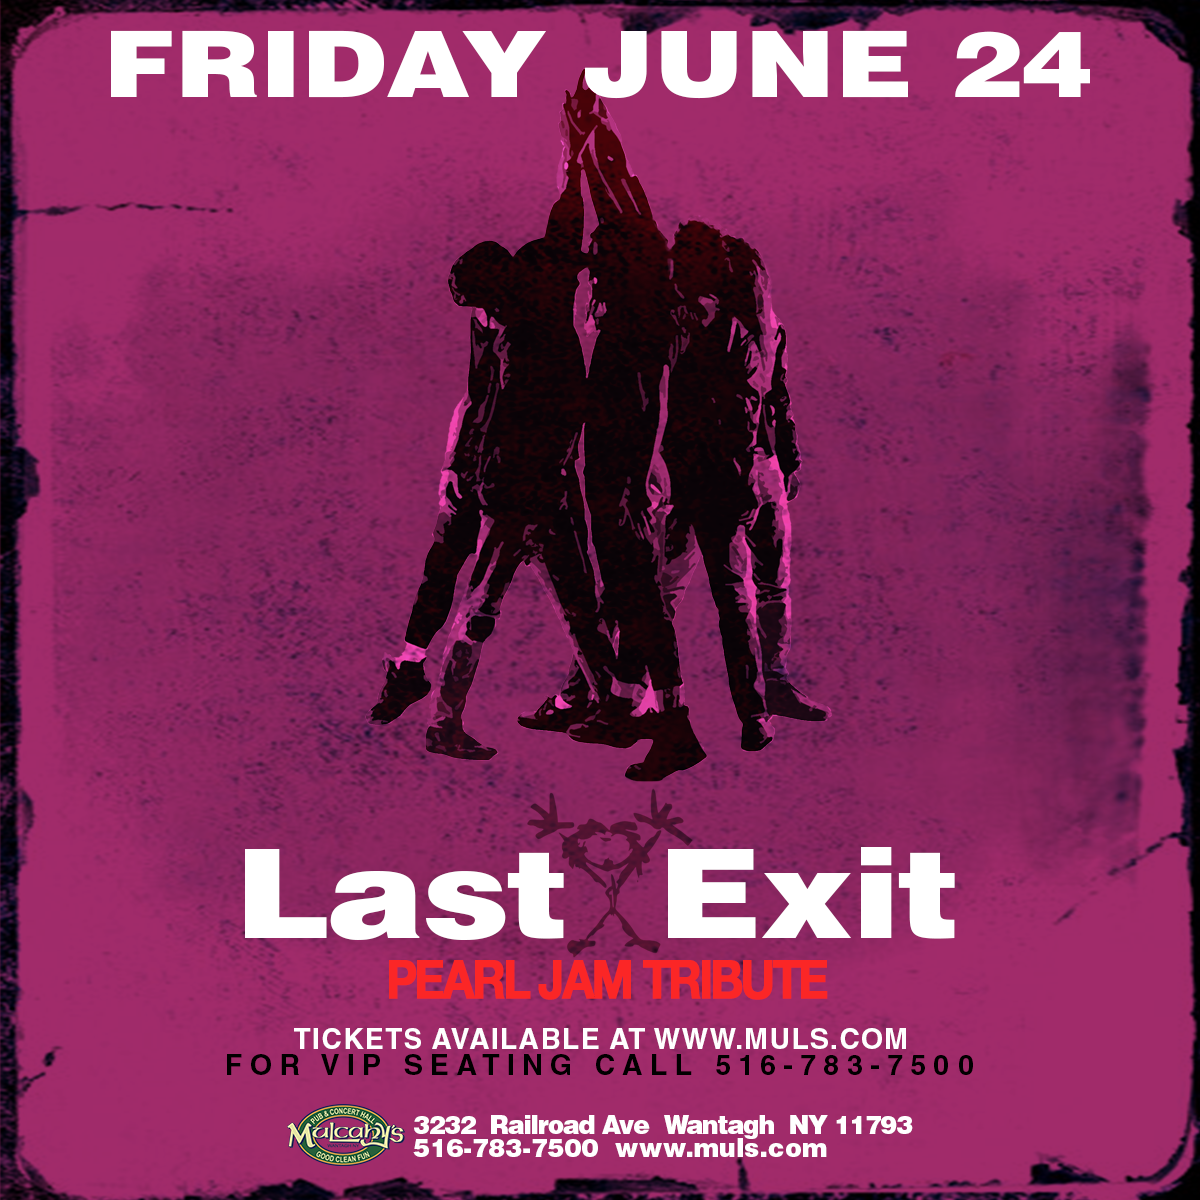 Last Exit June 24 Insta copy.png